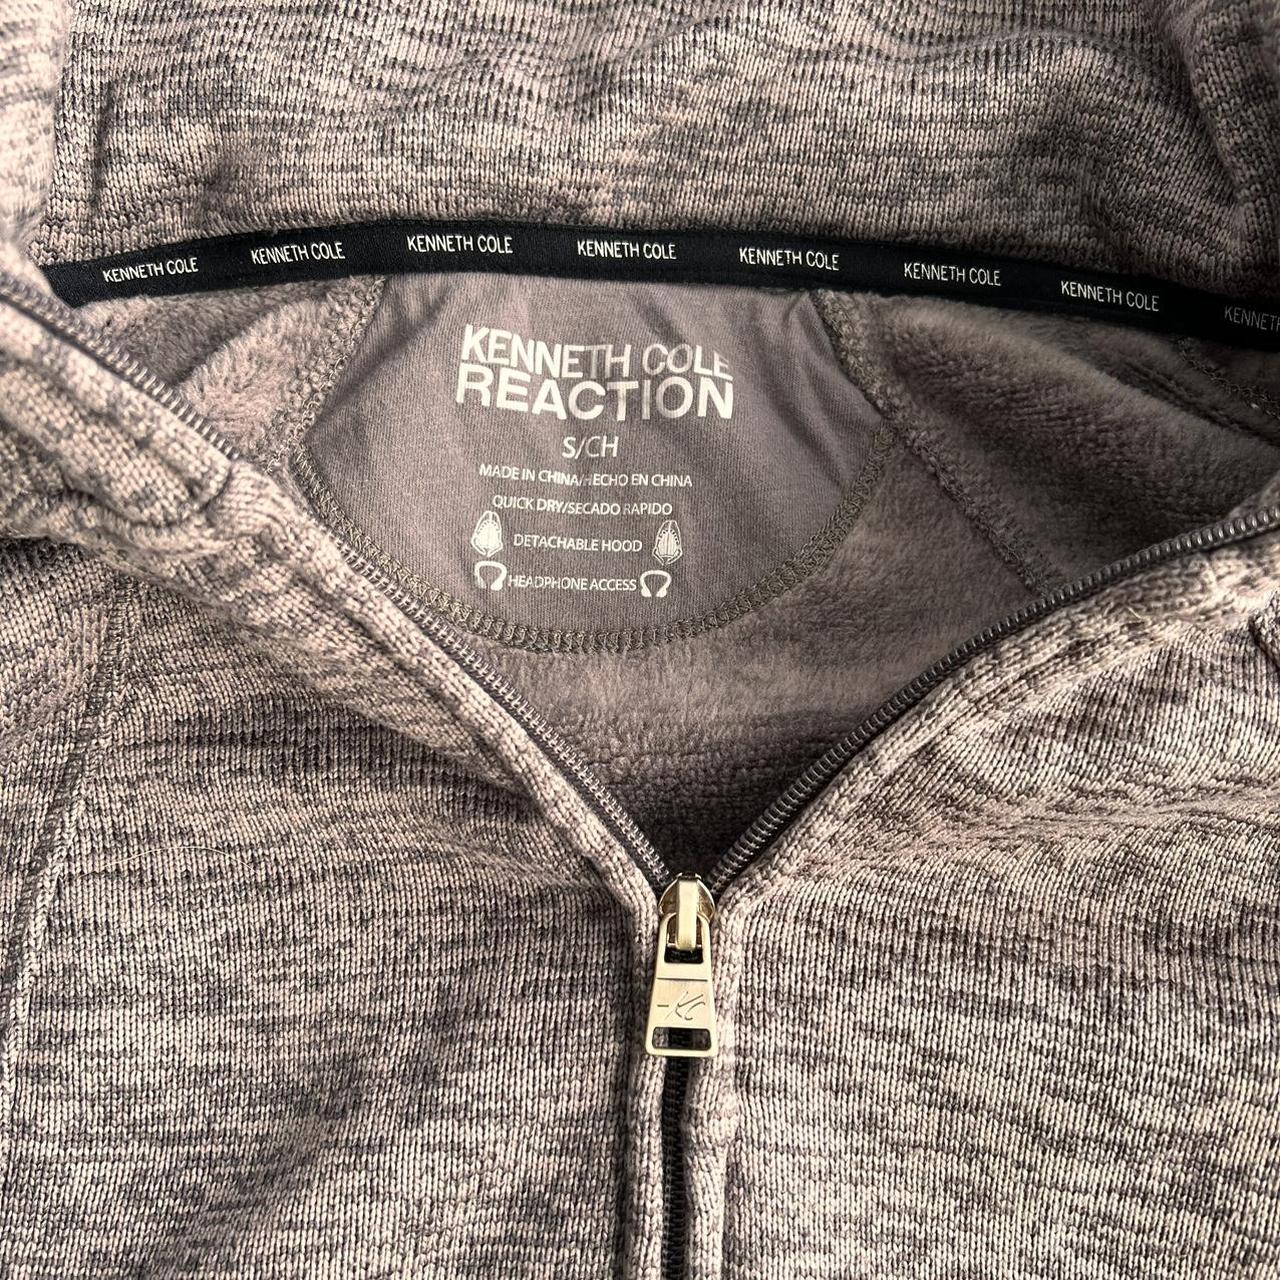 Kenneth Cole Reaction tech jacket. Double zipper,... - Depop